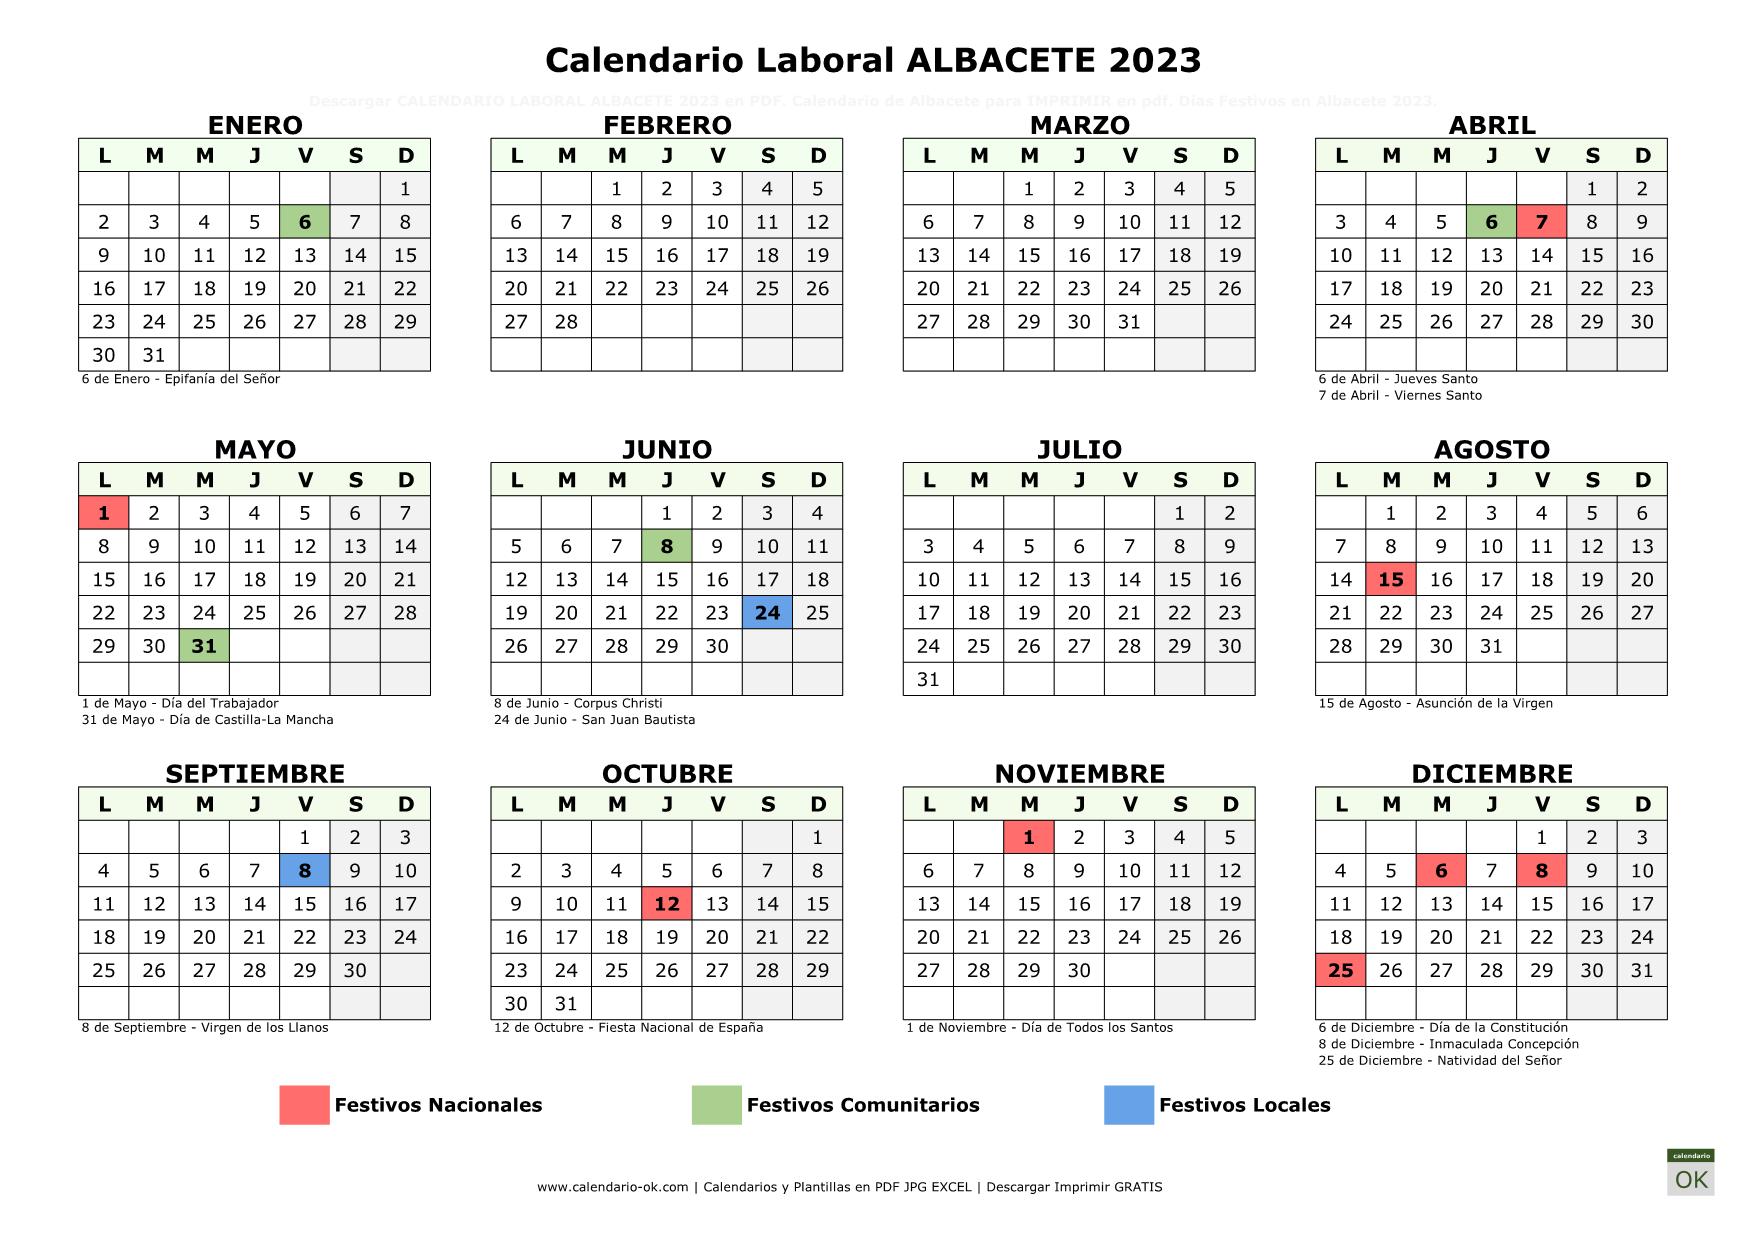 Calendario Laboral Albacete 2023 horizontal